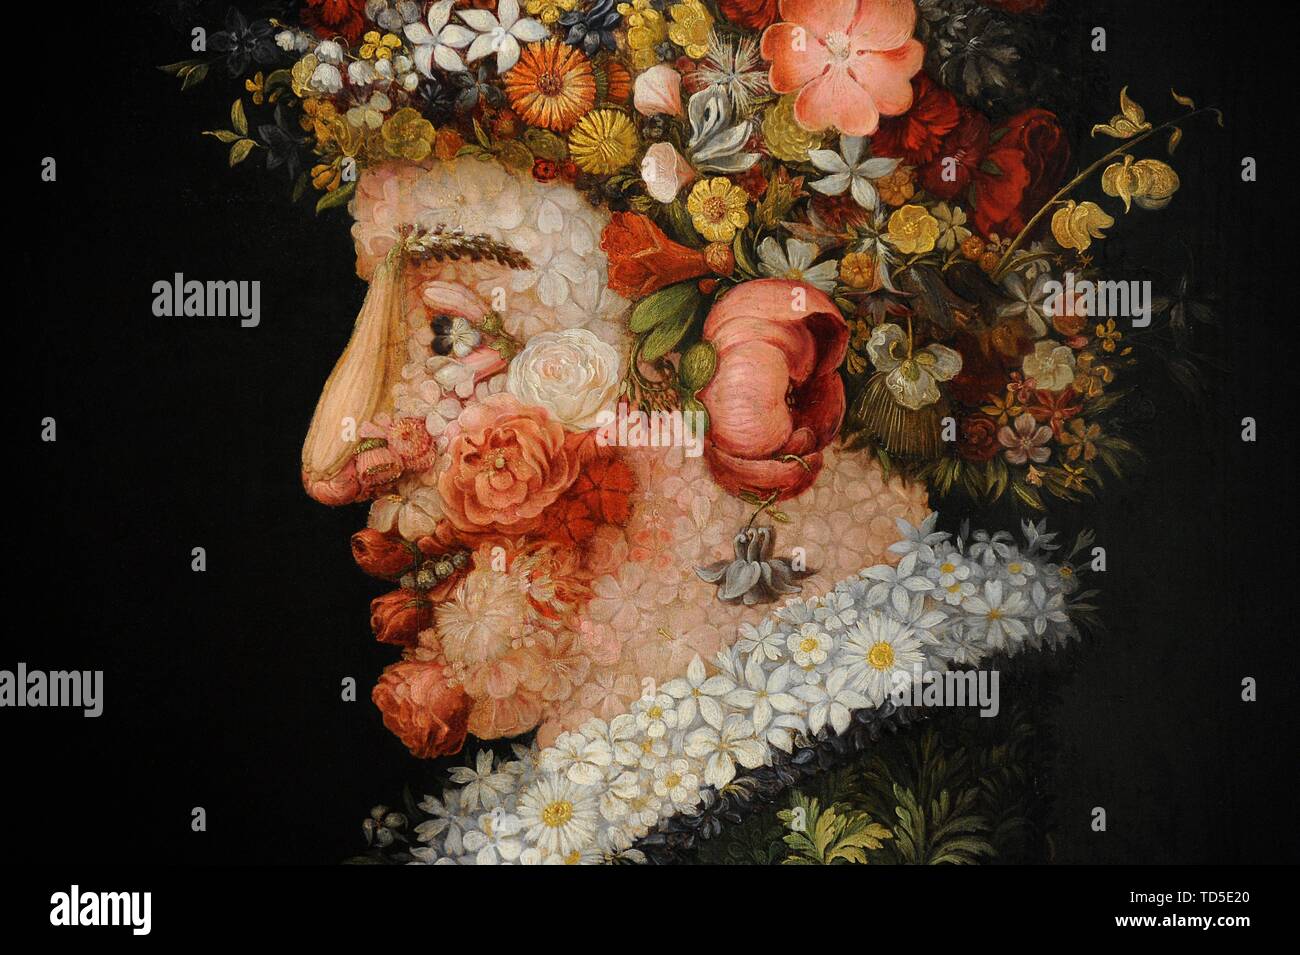 Giuseppe Arcimboldo (1527-1593). Pintor italiano. La Primavera, hacia 1563. Detalle. Óleo sobre tabla. 0,66 x 0,50 m. Real Academia de Bellas Artes de San Fernando. Madrid. España. Banque D'Images